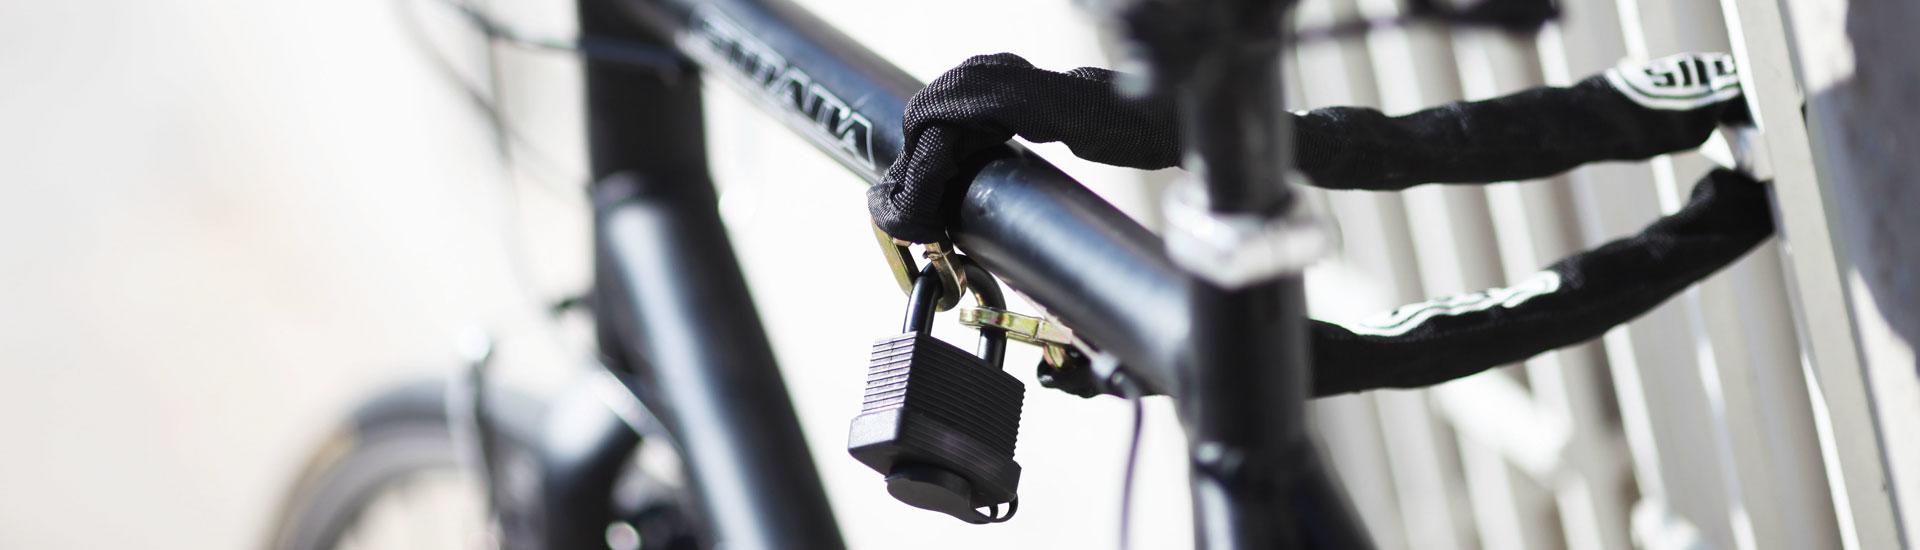 fahrrad hinterrad steckachse ausbauen schaltung bremsscheibe